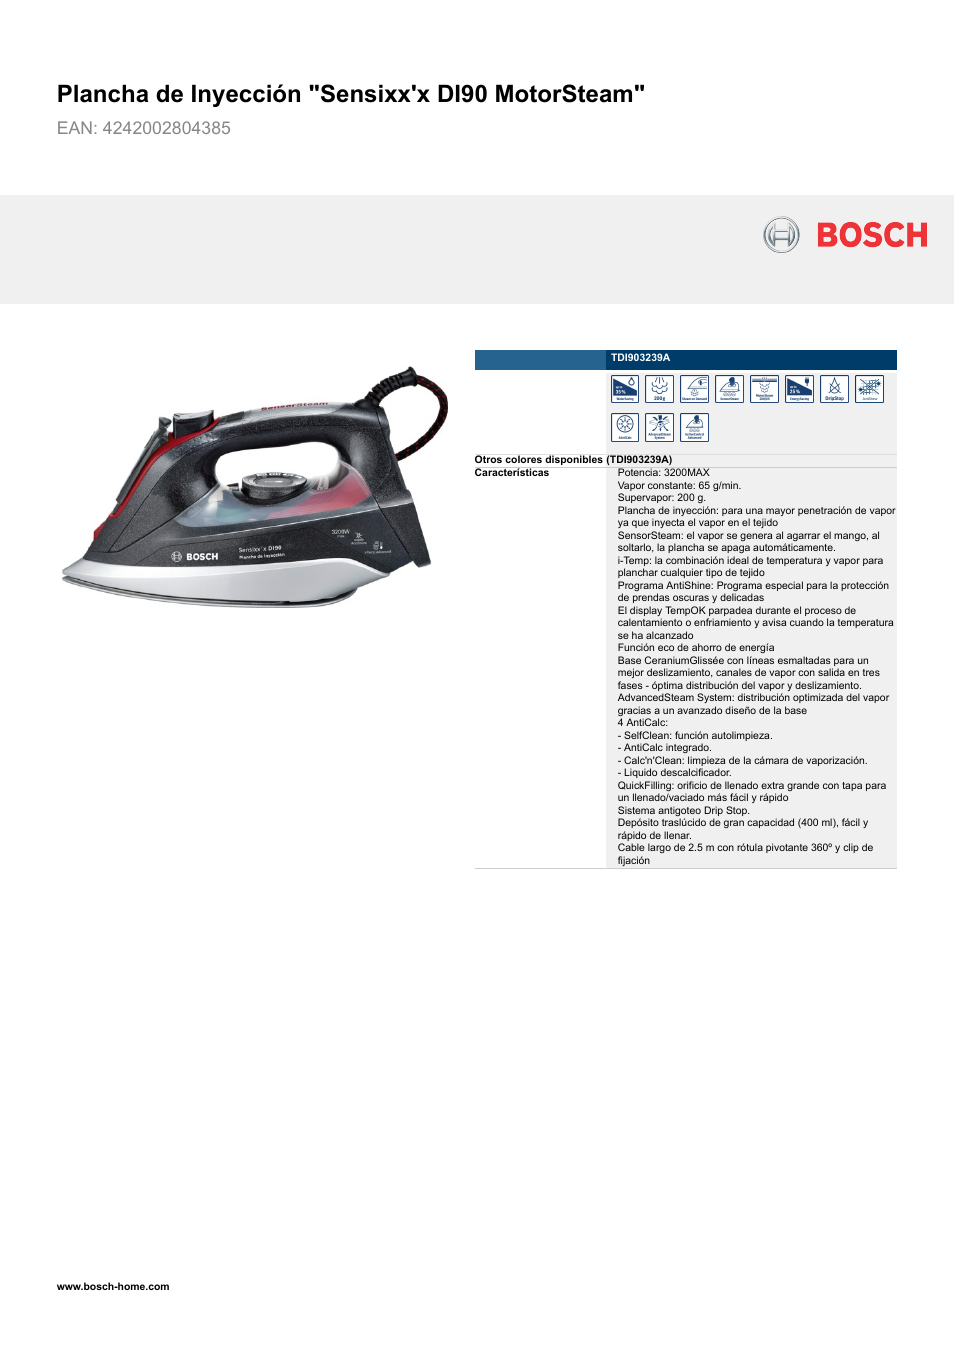 Bosch TDI903239A plancha